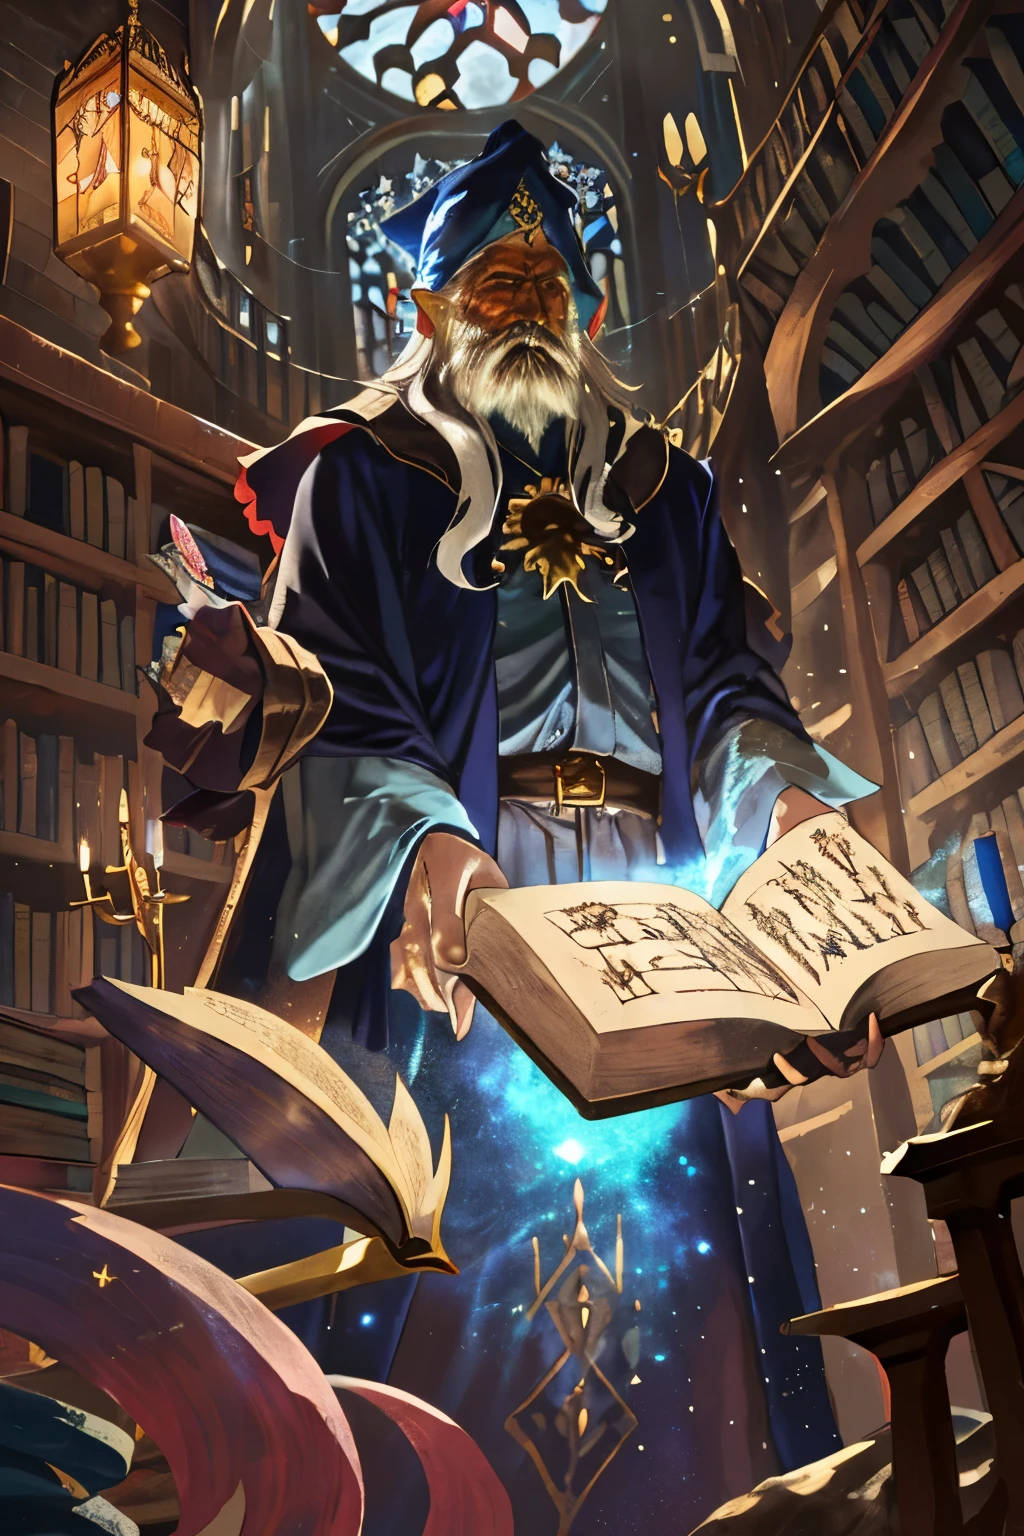 고대 마법사가 오래된 건물에 서 있다, 신비로운 도서관. 마법사는 오랫동안, 흰 수염을 갖고 있으며 황금빛 별과 달로 장식된 복잡하게 수놓은 진한 파란색 가운을 입고 있습니다.. 그의 손 안에, 그는 마법의 룬이 새겨진 빛나는 지팡이를 들고 있습니다.. 도서관은 천장까지 닿는 높이 솟아오른 책장으로 가득 차 있다., 먼지가 많은, 고대 서적. 마법의 빛이 떠다닌다, 부드러운 캐스팅, 현장 위로 신비한 빛. 백그라운드에서, 큰 고딕 양식의 창문은 보름달이 빛나게 해준다, 은빛 빛으로 고풍스러운 나무 선반을 목욕시키다. 분위기는 고요하고 마법으로 가득 차 있습니다., 고대의 비밀과 강력한 주문이 눈에 띄게 존재합니다.